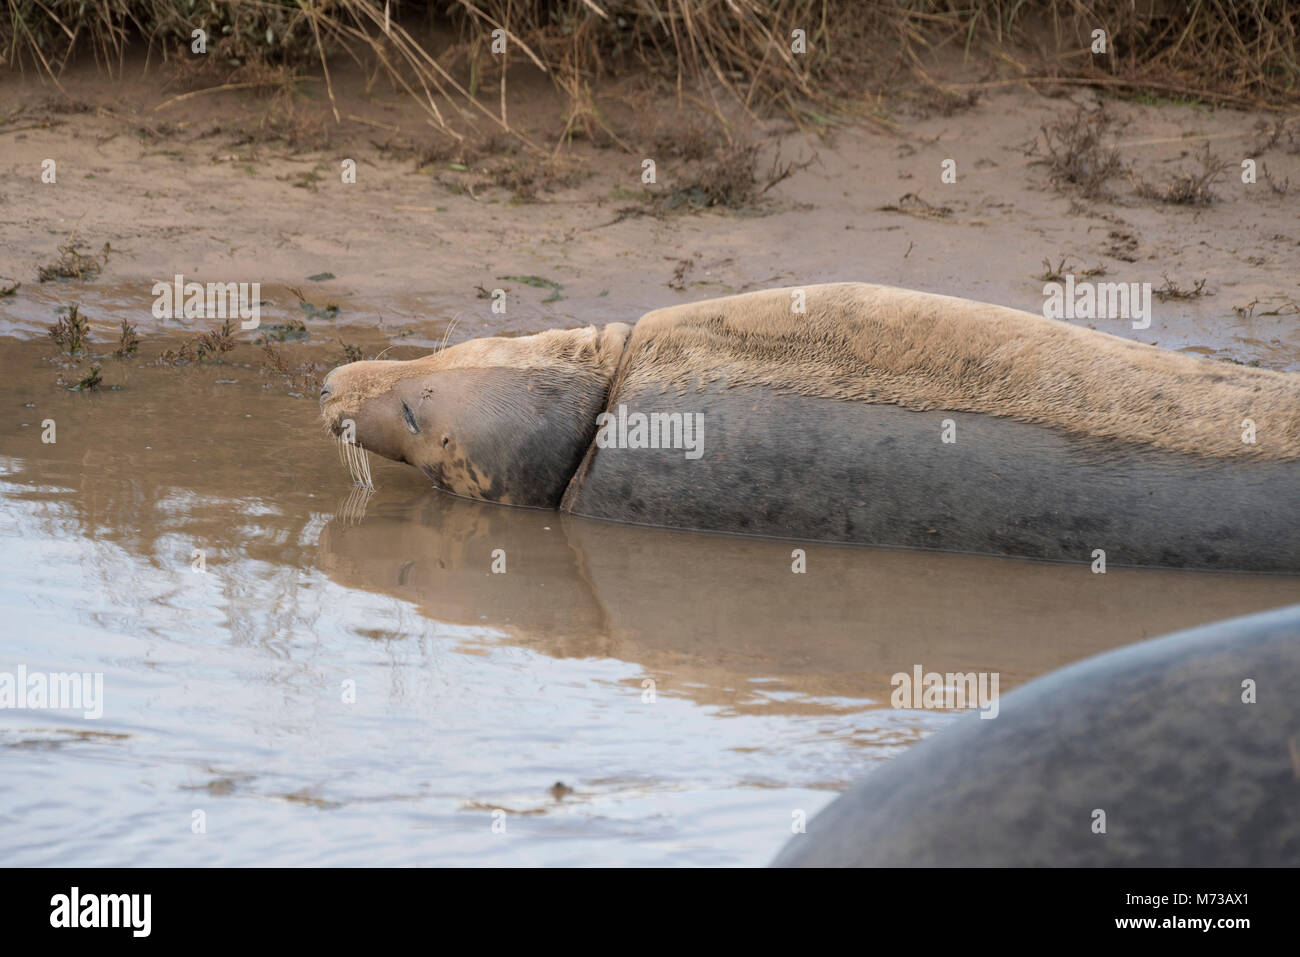 Donna Nook, Lincolnshire, ANGLETERRE - 15 novembre : une ligne du mouillé au sec dans une fourrure de phoque gris en tant qu'elle retourne dans l'eau le 15 novembre 2016 à Donna Nook Seal Sa Banque D'Images